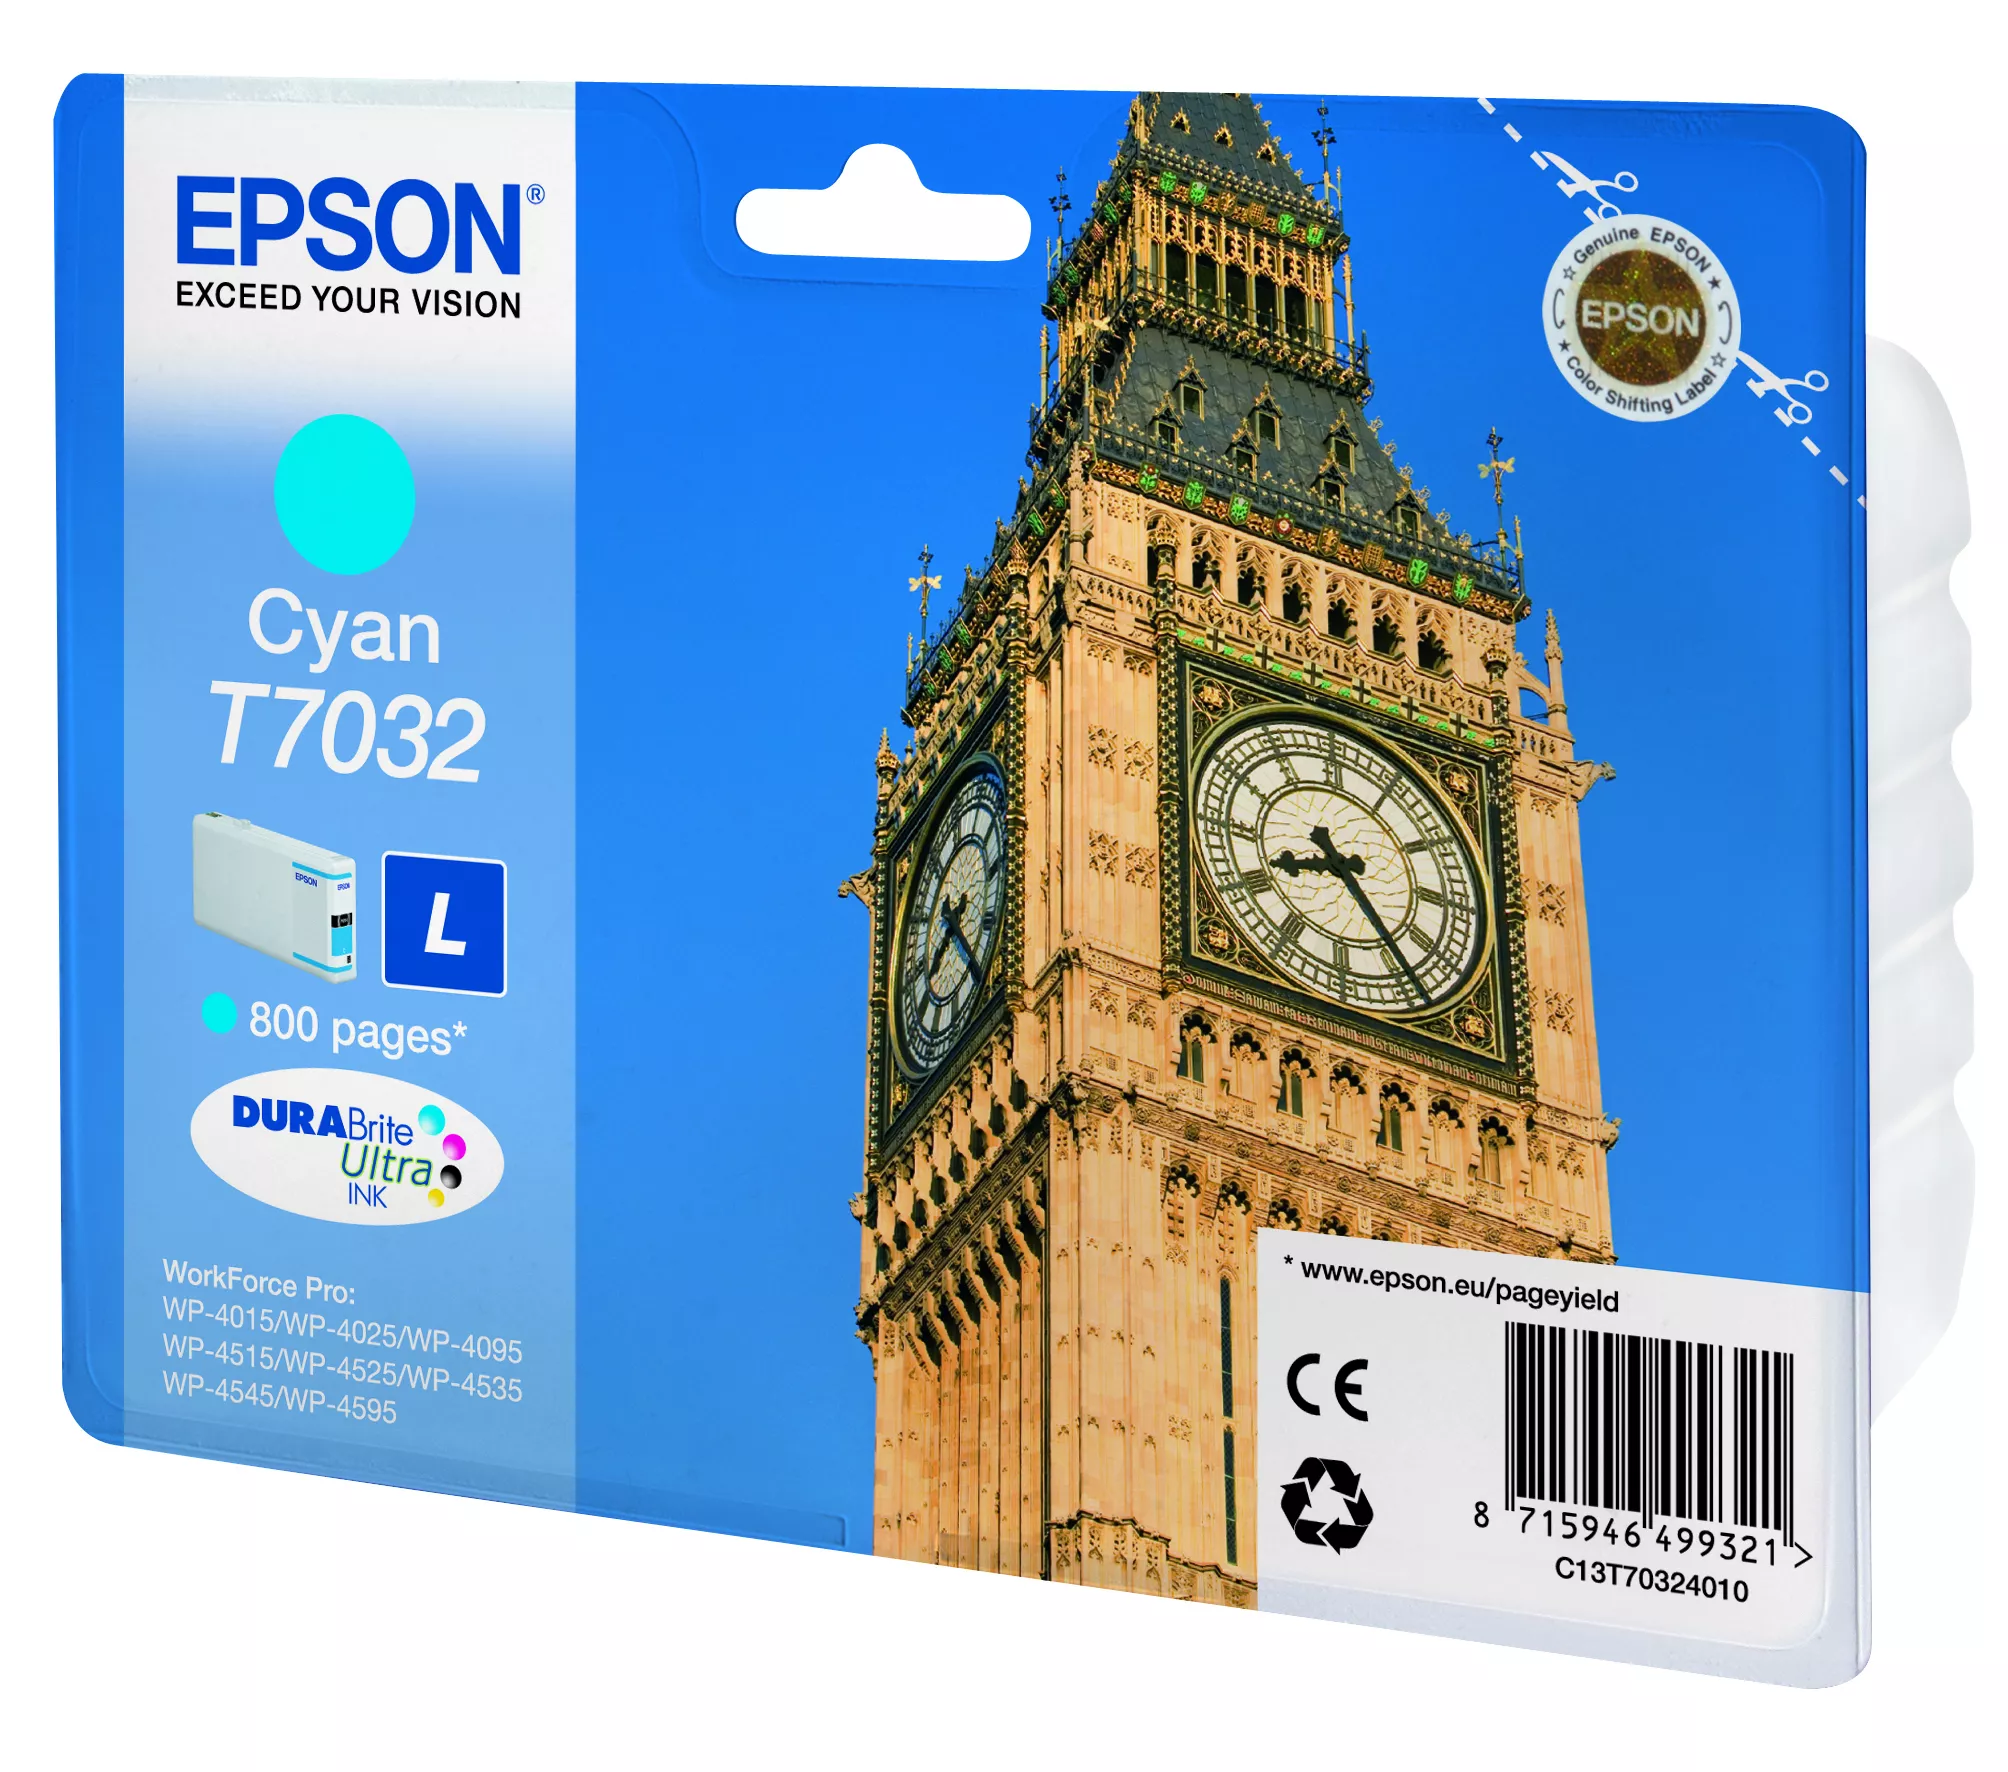 Vente EPSON T7032 cartouche de encre cyan capacité standard Epson au meilleur prix - visuel 2